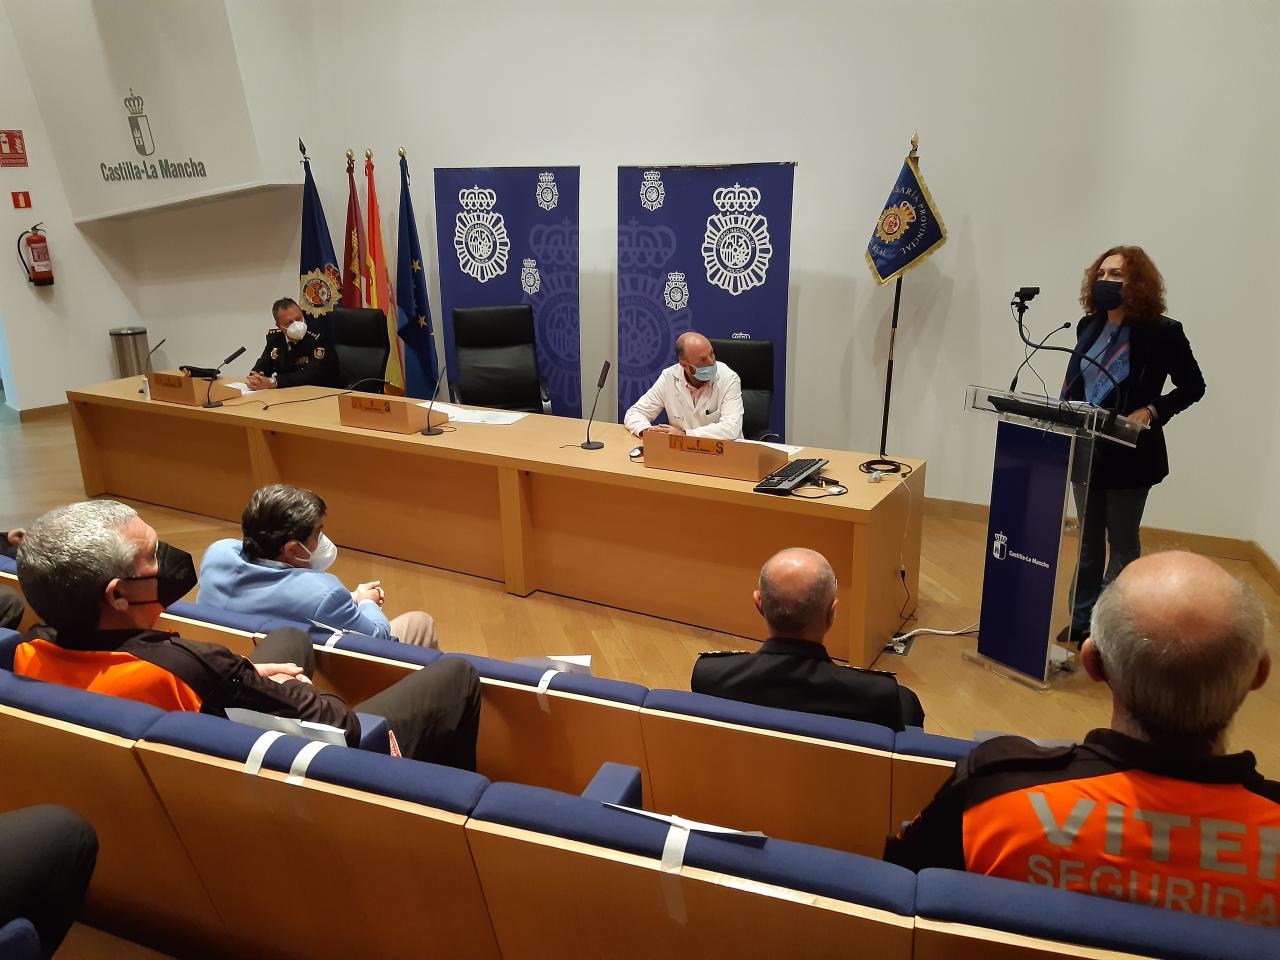 La subdelegada del Gobierno de España en la provincia de Ciudad Real ha presidido la entrega de las menciones honorificas a personal de seguridad privada en el ámbito sanitario